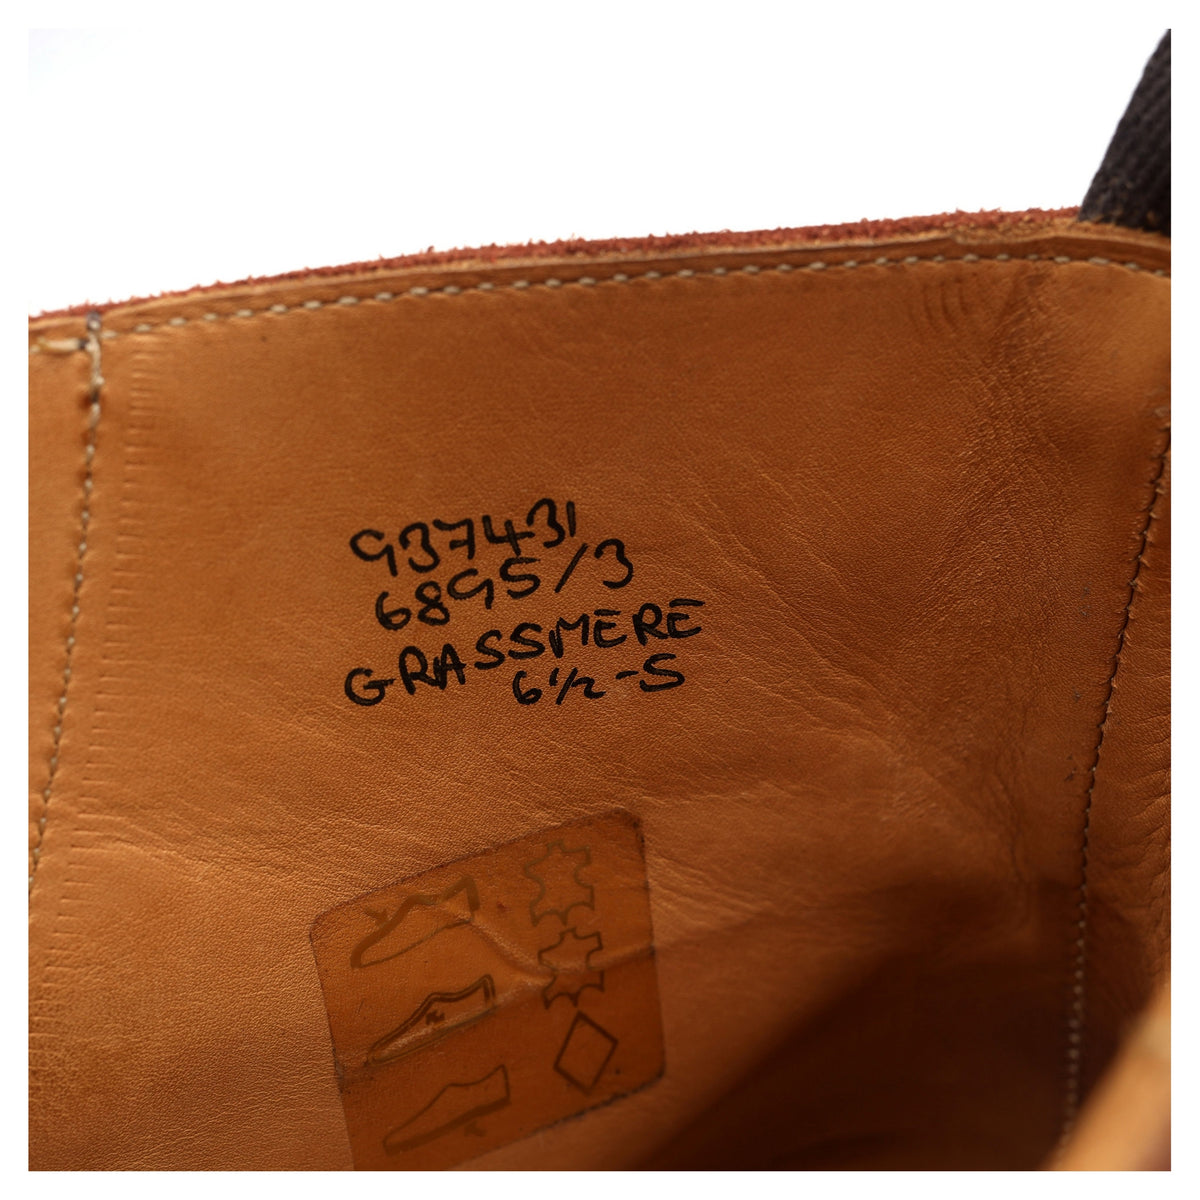 &#39;Grassmere&#39; Dark Brown Kudu Leather Derby Boots UK 6.5